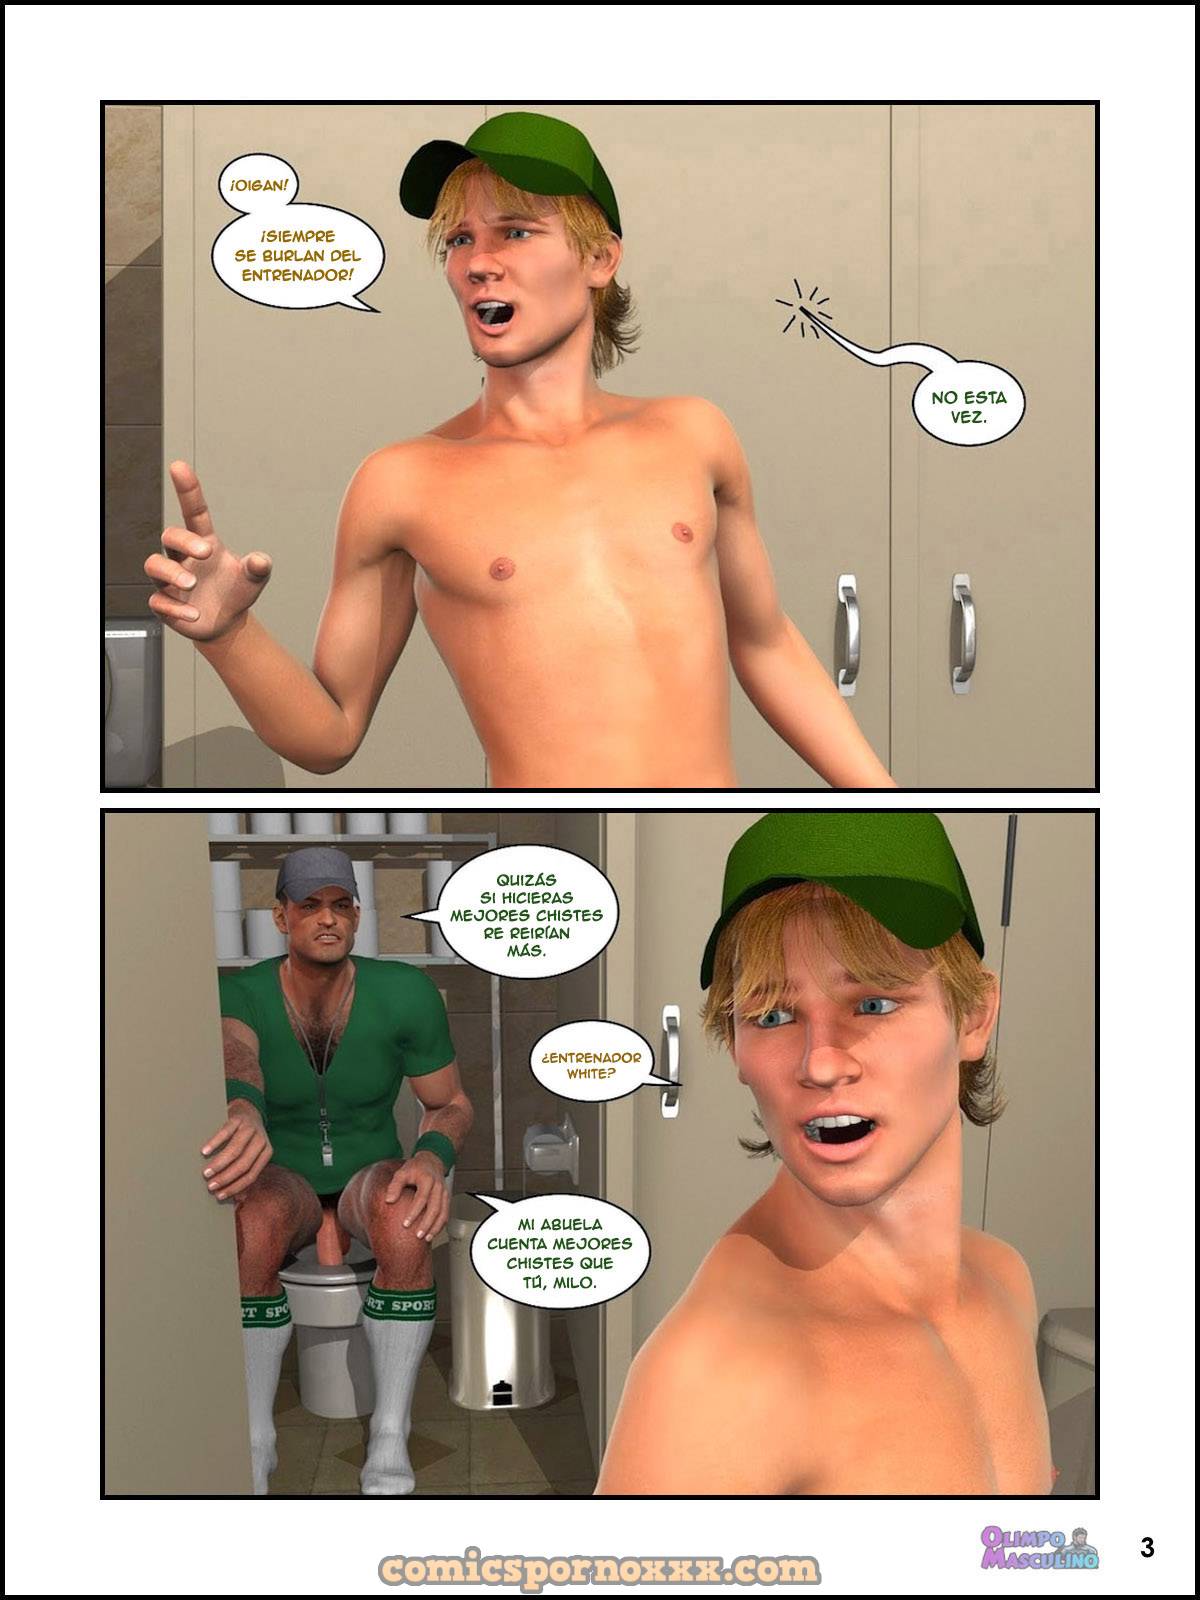 Jovencito Gay Follado en el Baño por el Entrenador - 3 - Comics Porno - Hentai Manga - Cartoon XXX